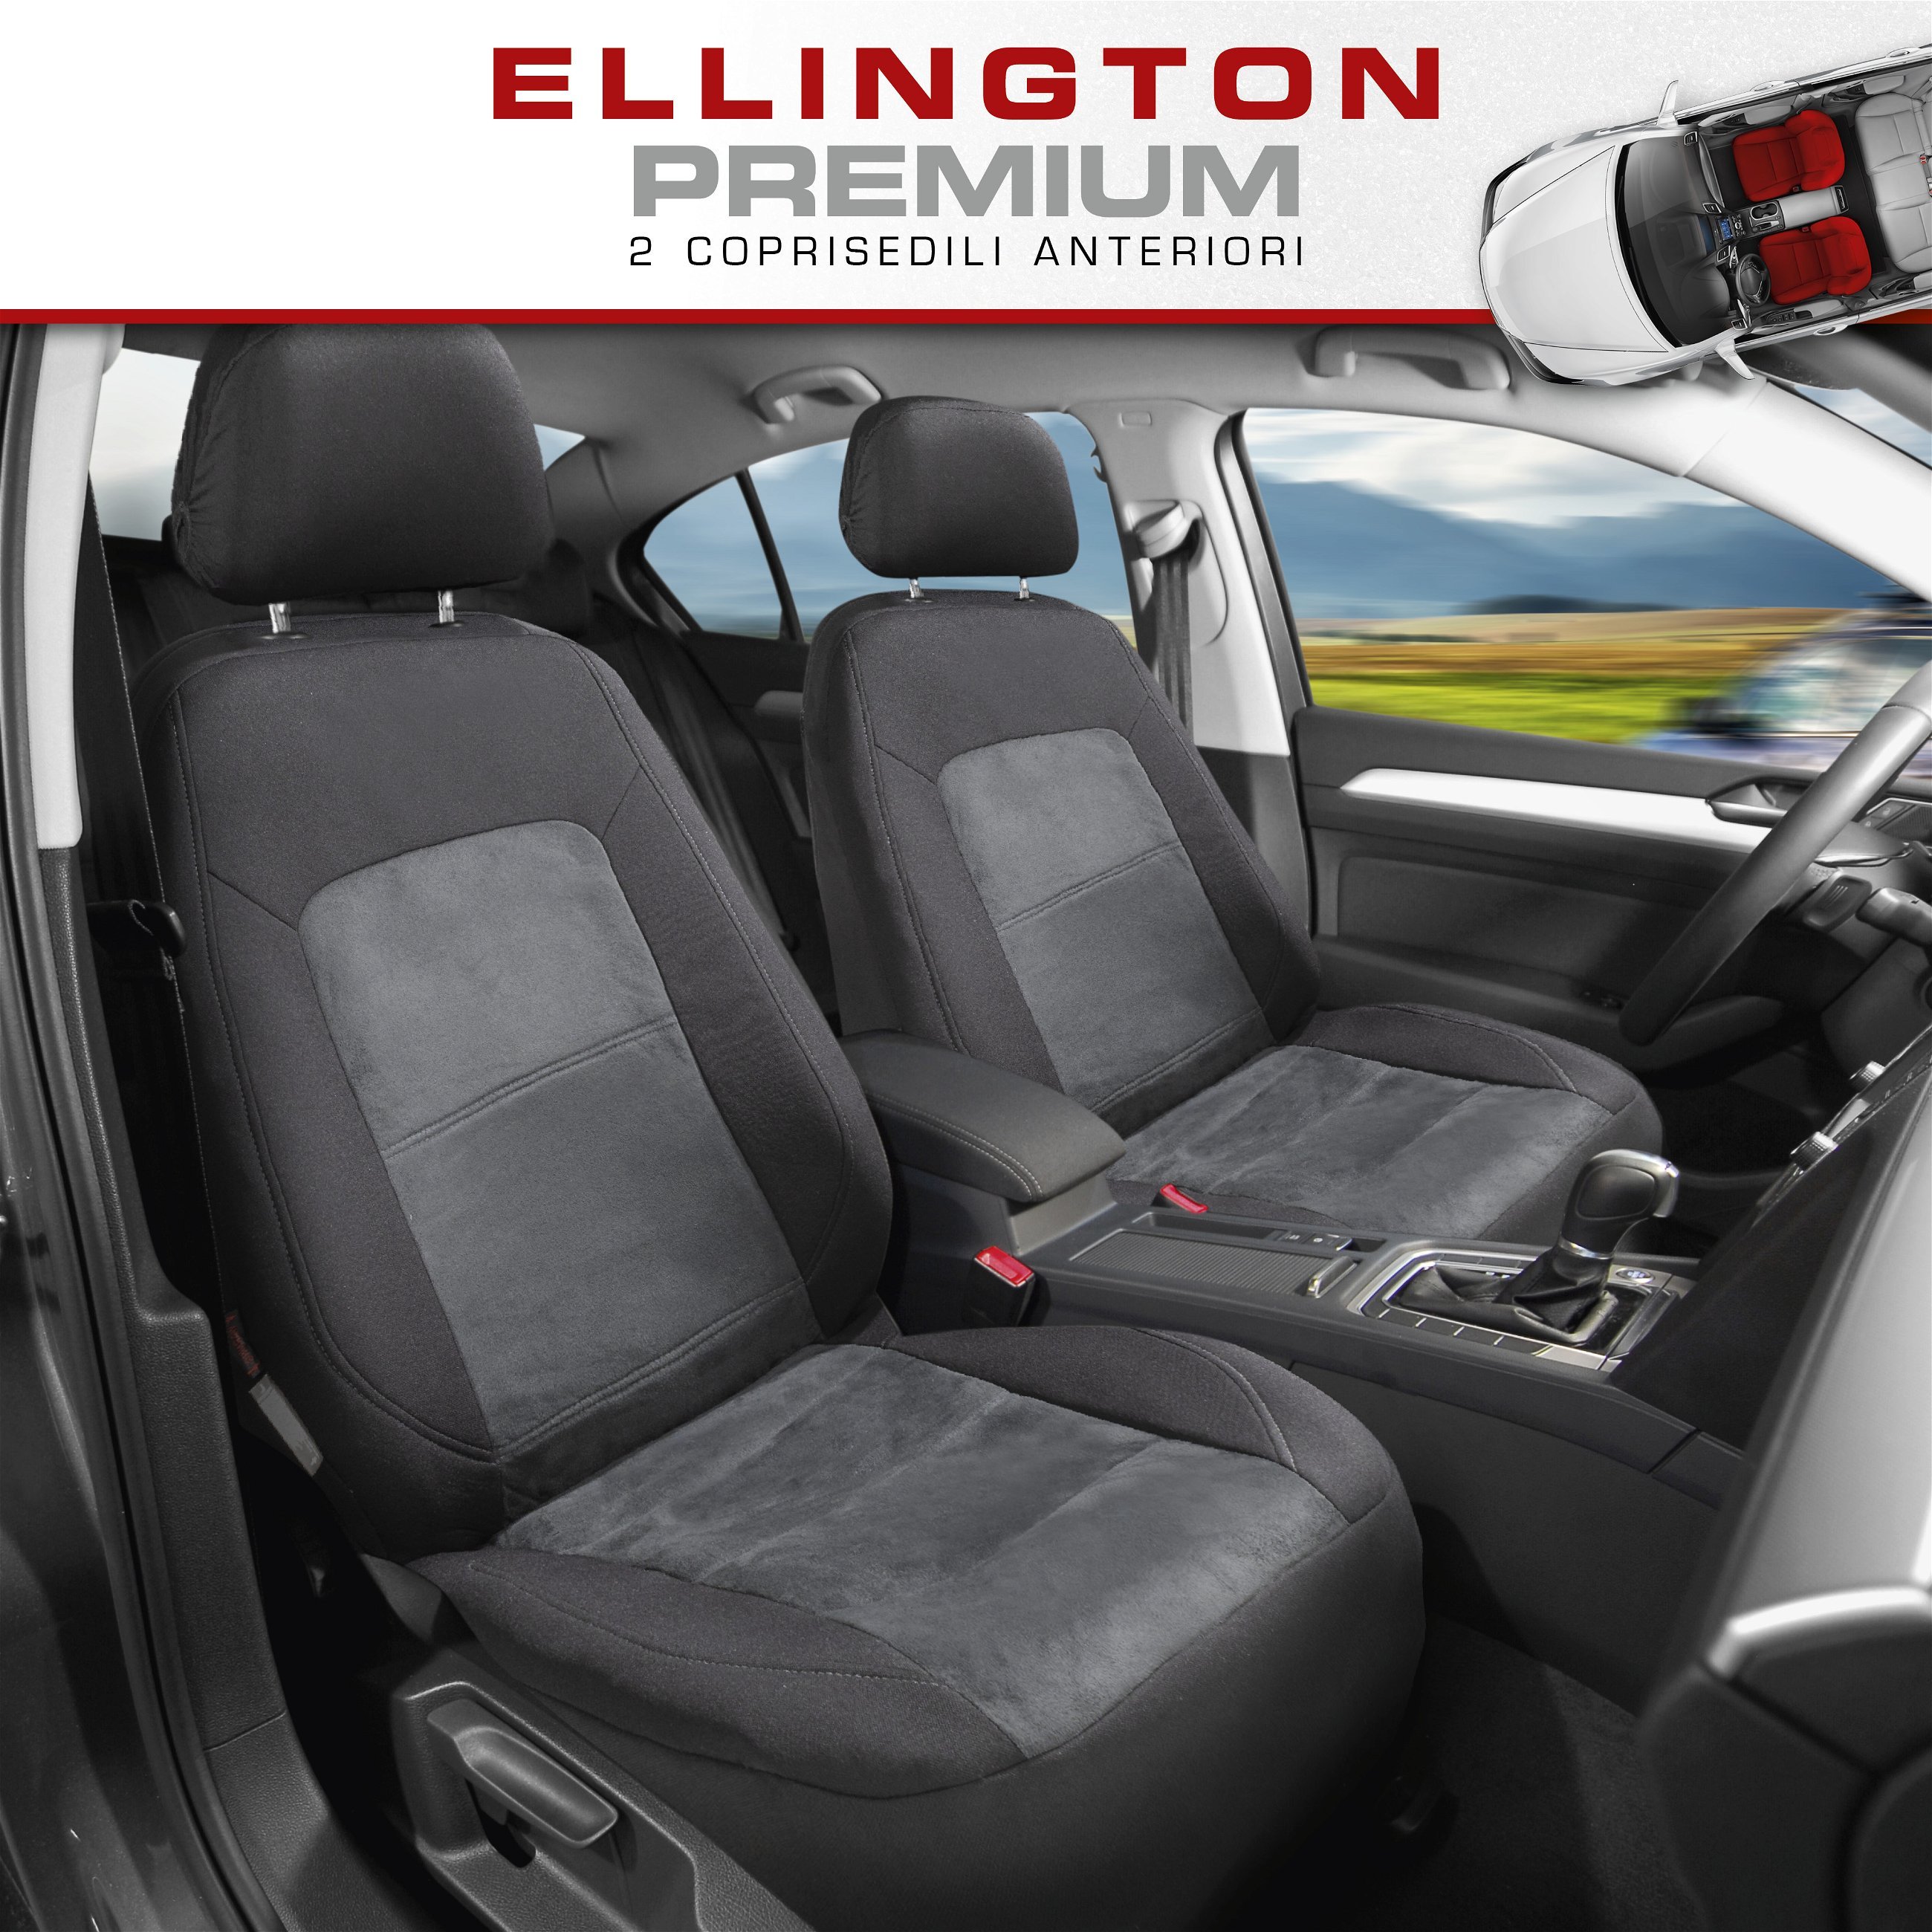 ZIPP IT Premium Coprisedili Ellington per due sedili anteriori con sistema di chiusura lampo nero/grigio